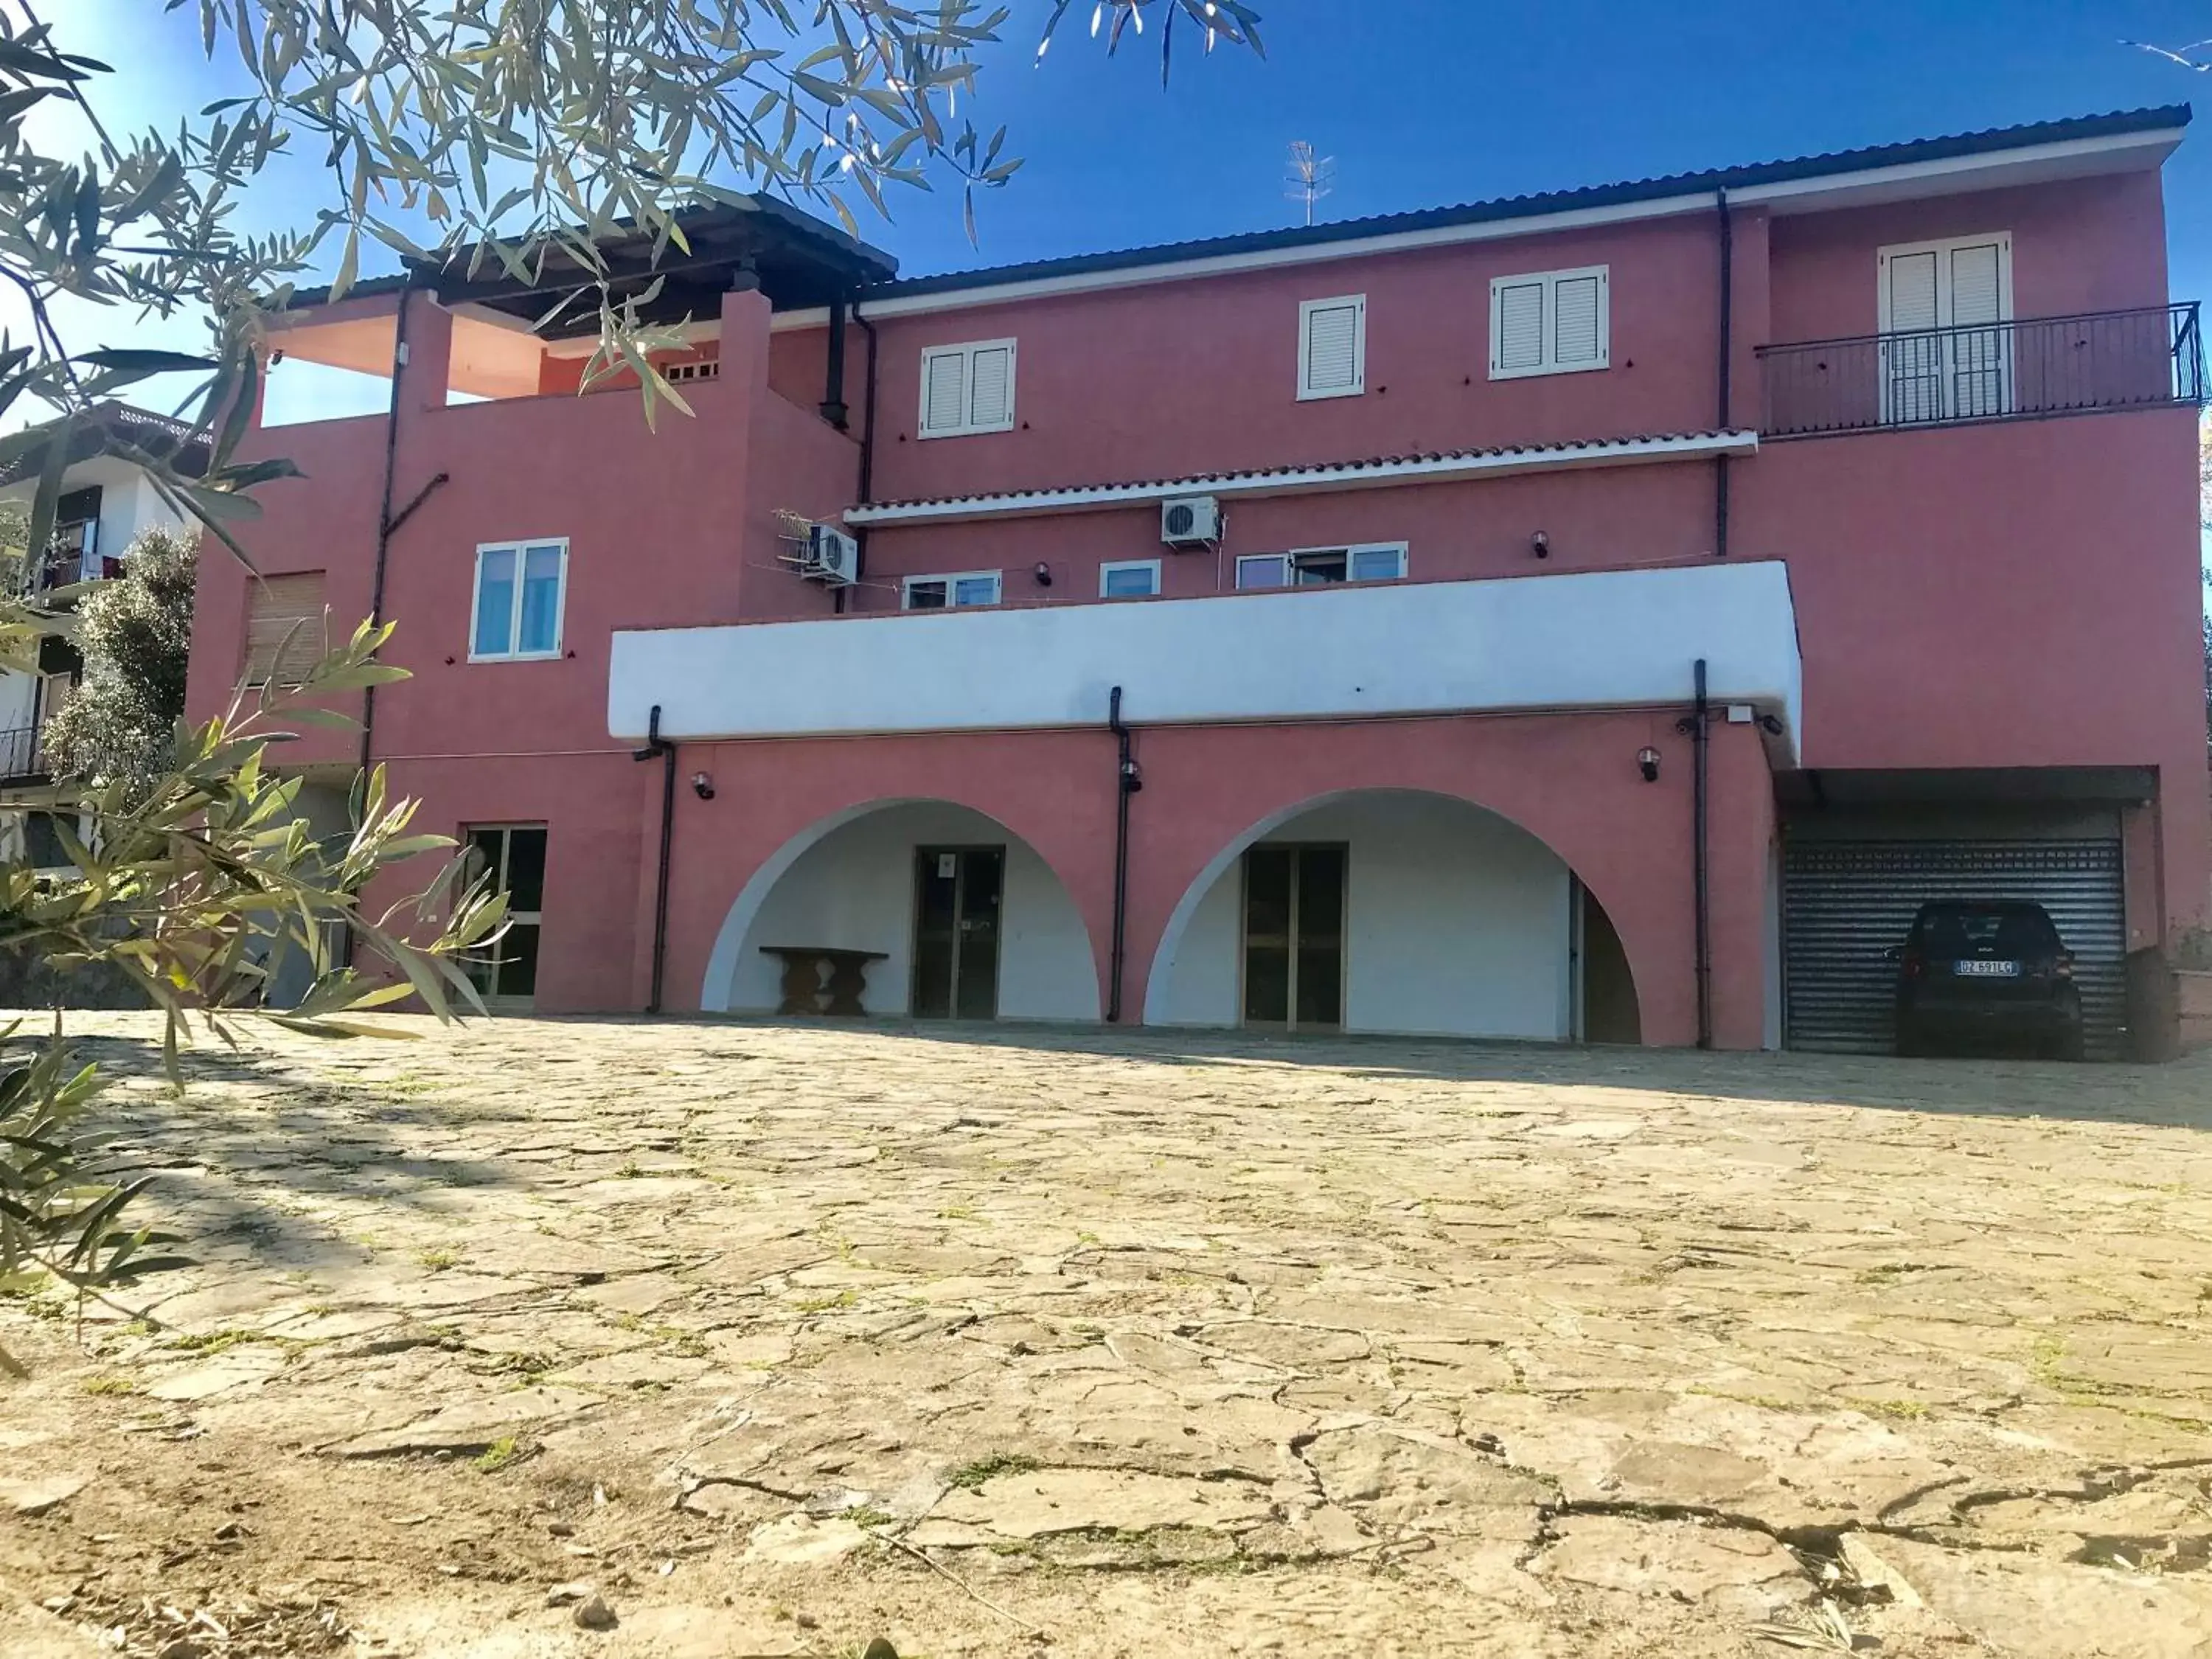 Property Building in Cilento